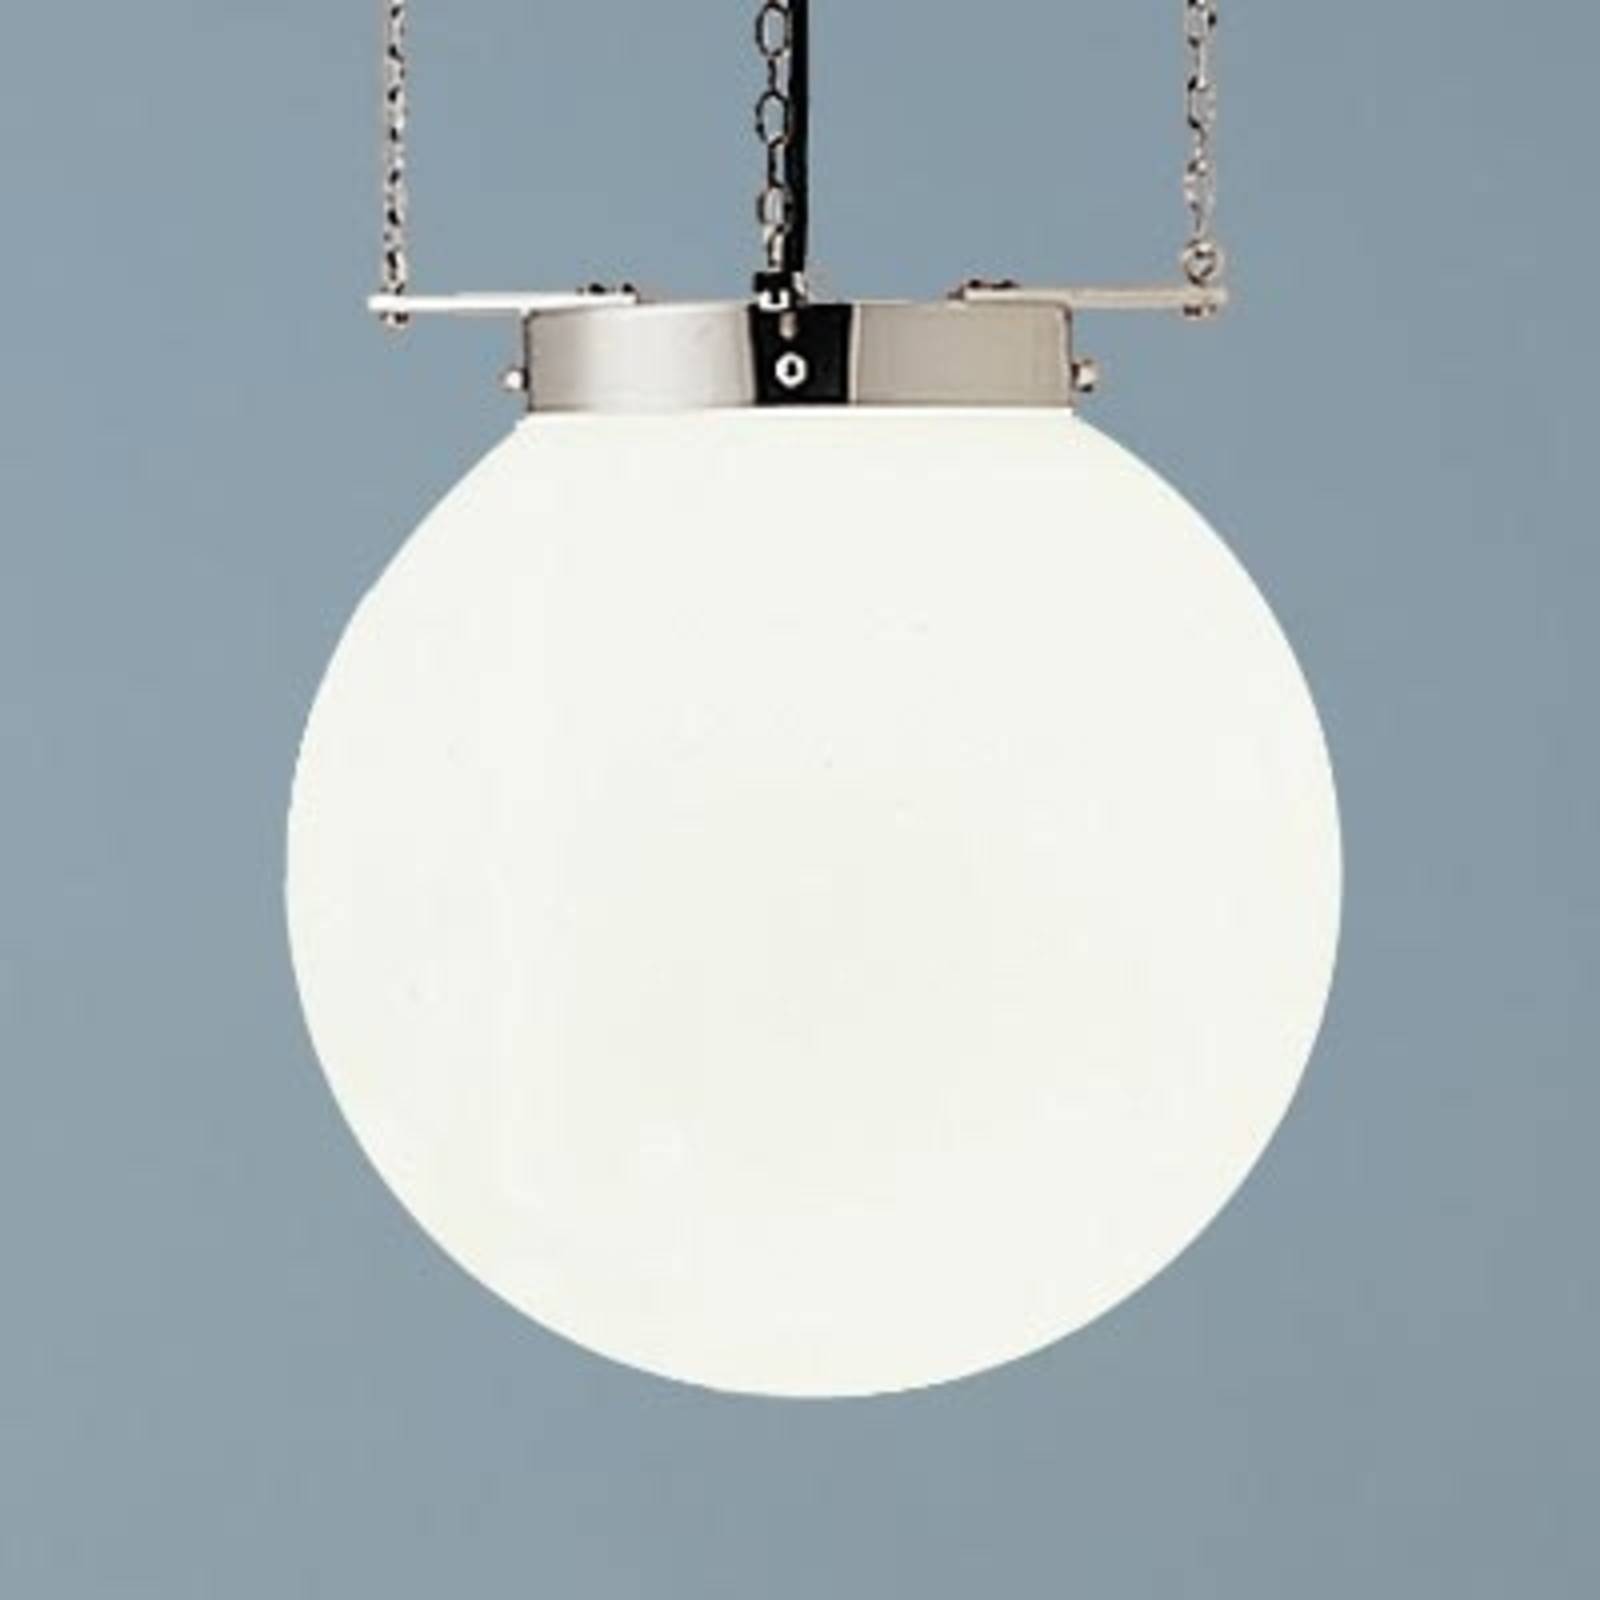 Lampa wisząca w stylu Bauhaus nikiel 35 cm